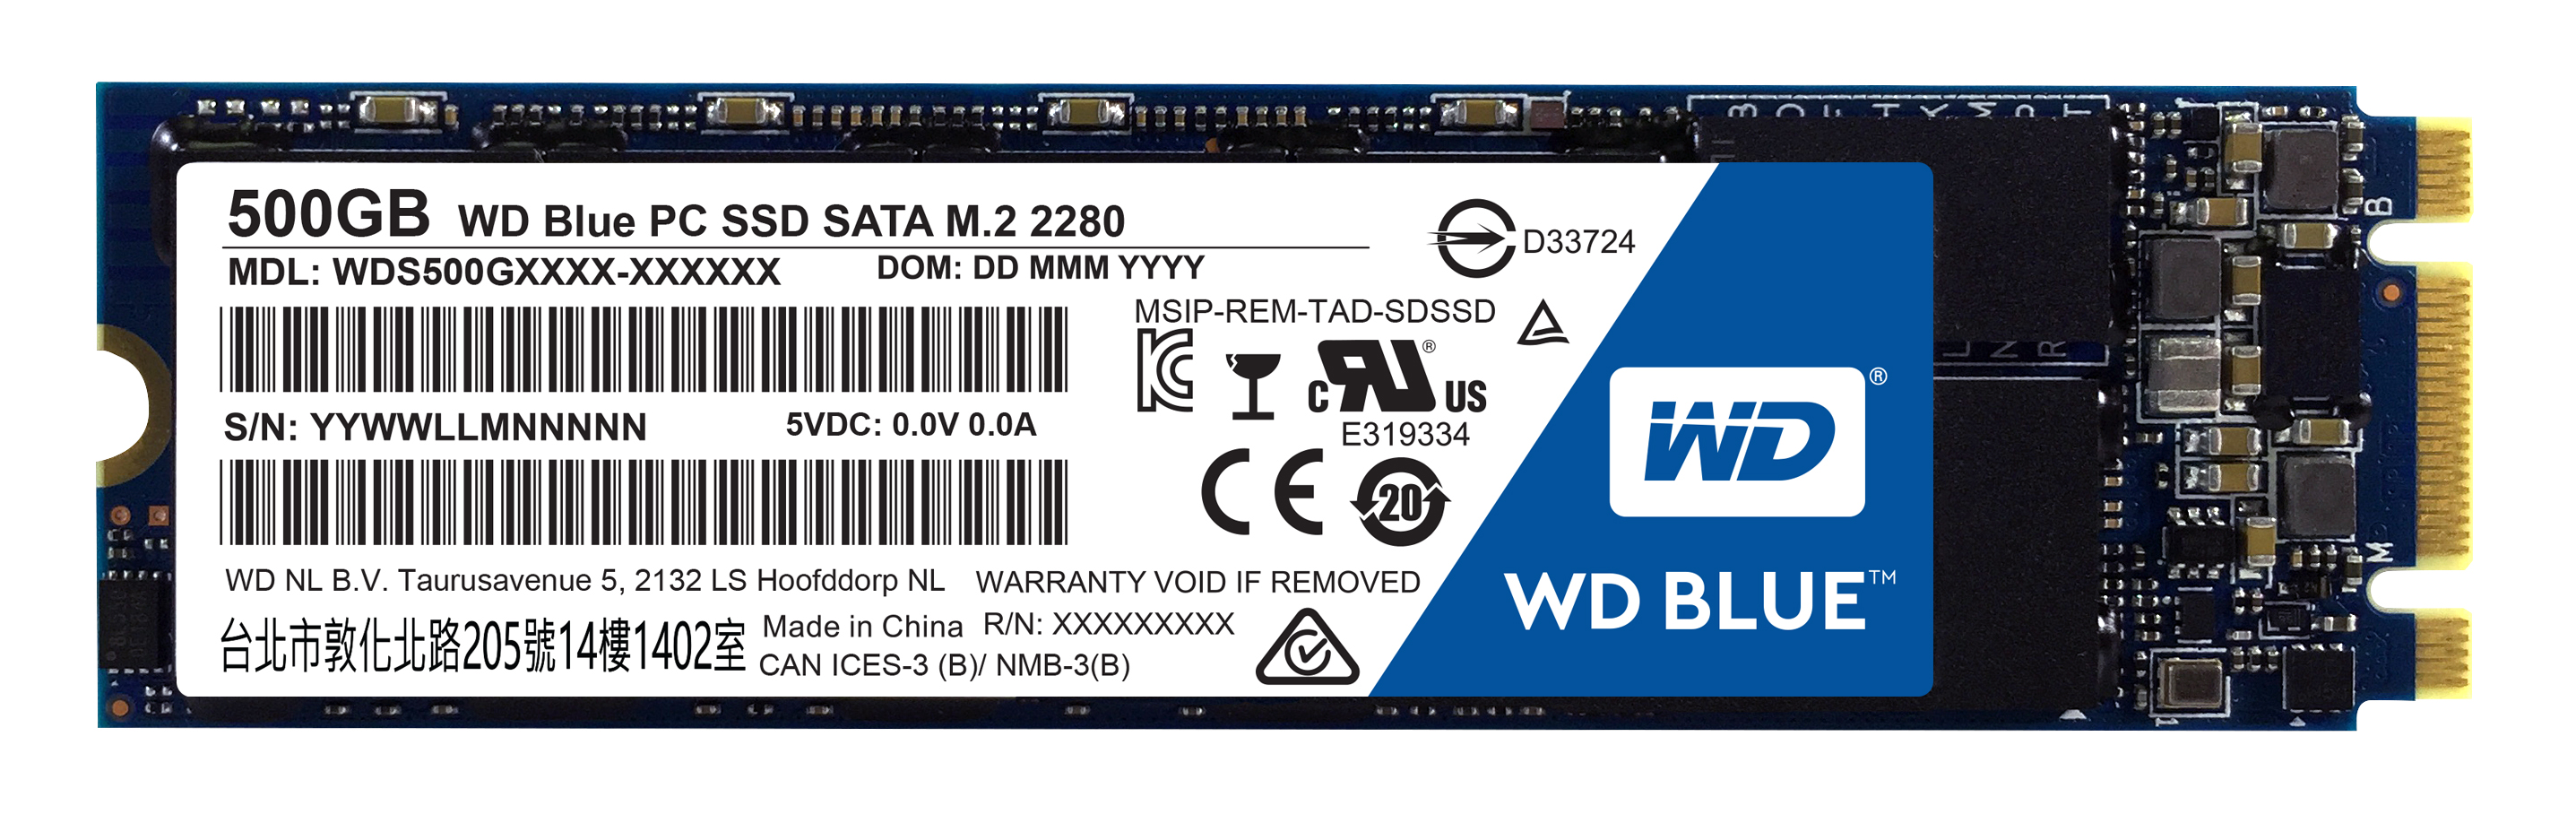 WD Blue M.2 500GB Internal SSD Solid State Drive - SATA 6Gb/s - WDS500G1B0B - image 2 of 2